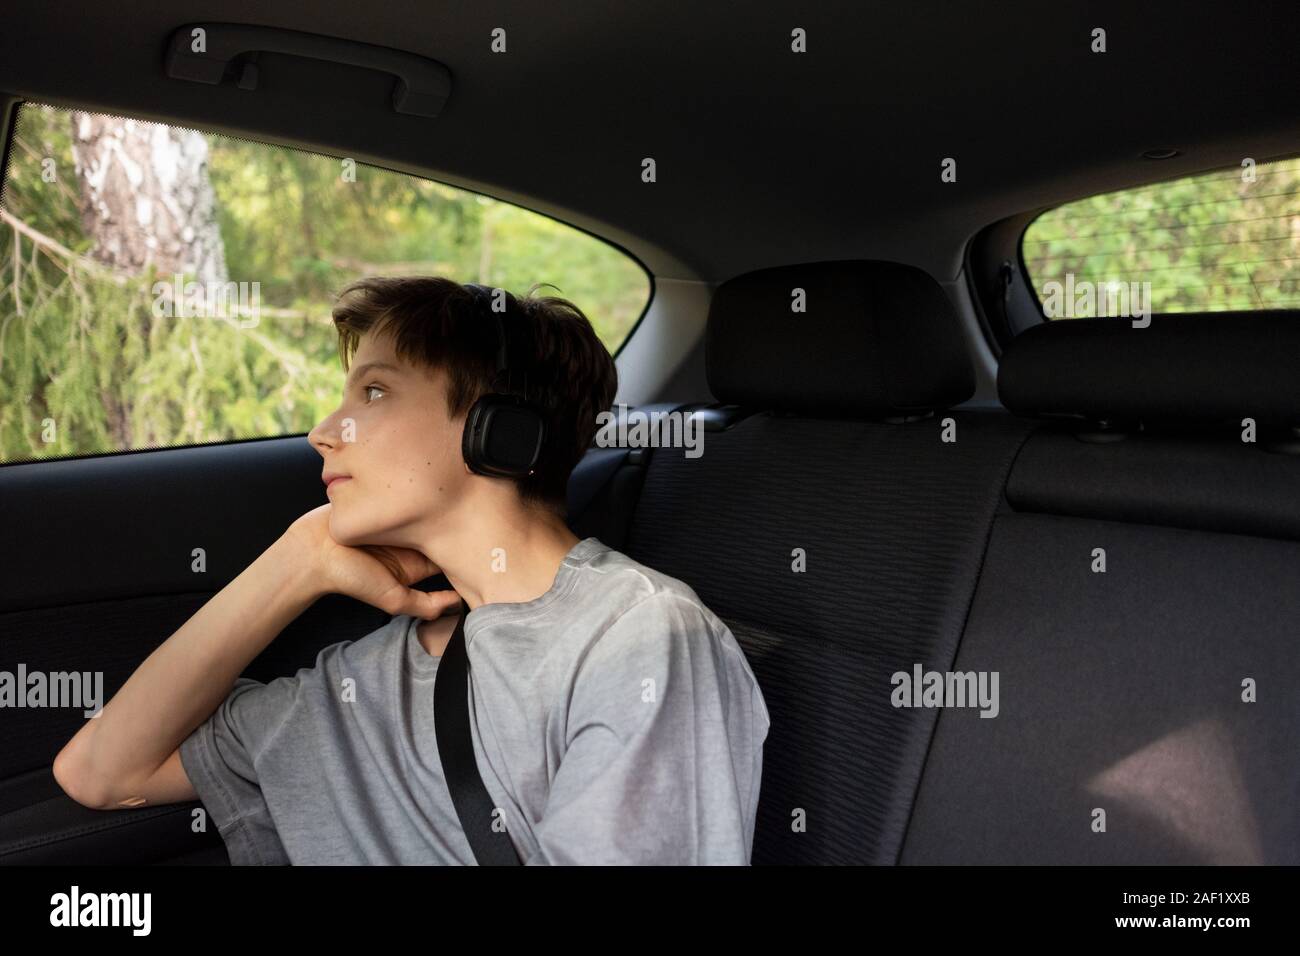 Junge im Auto durch Spiegel Stockfoto